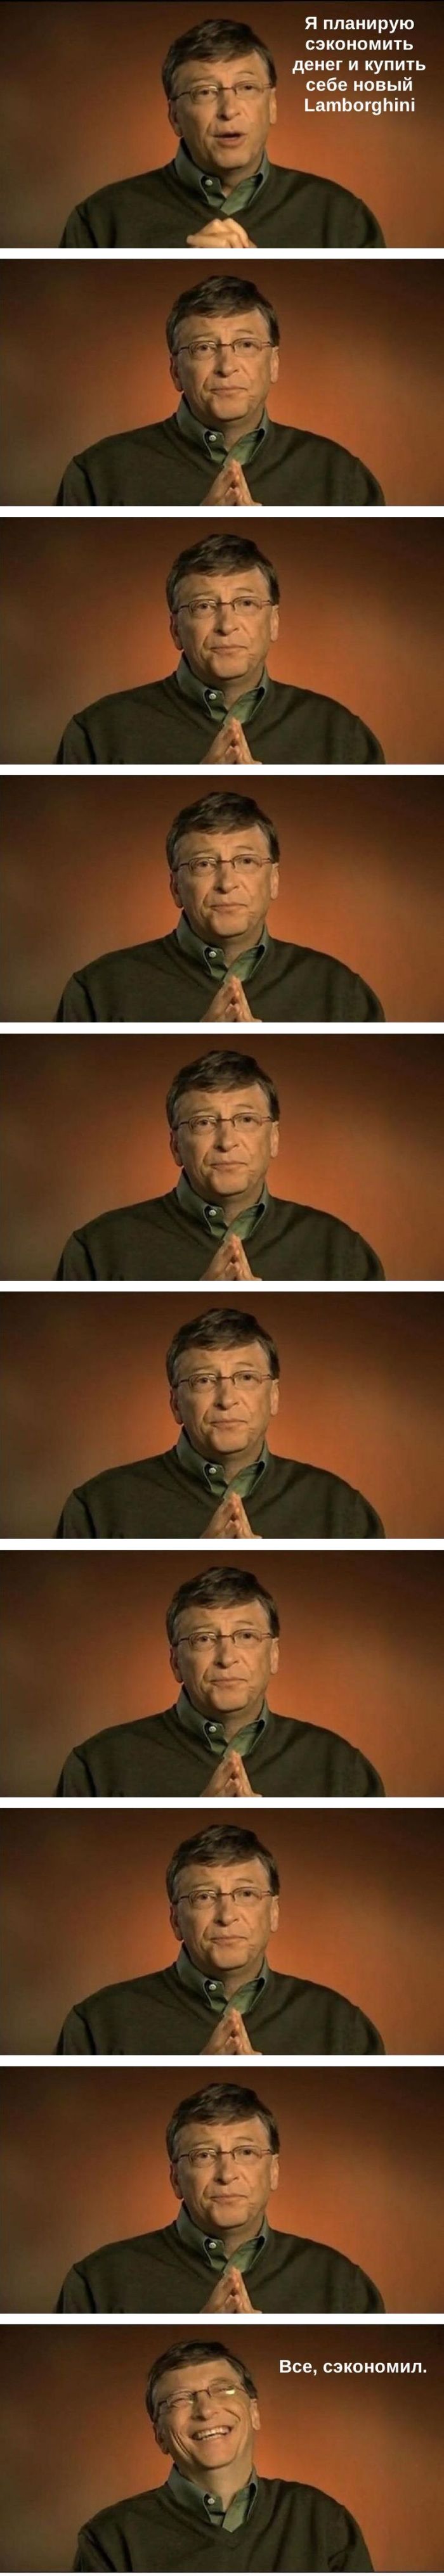 Билл Гейтс экономит